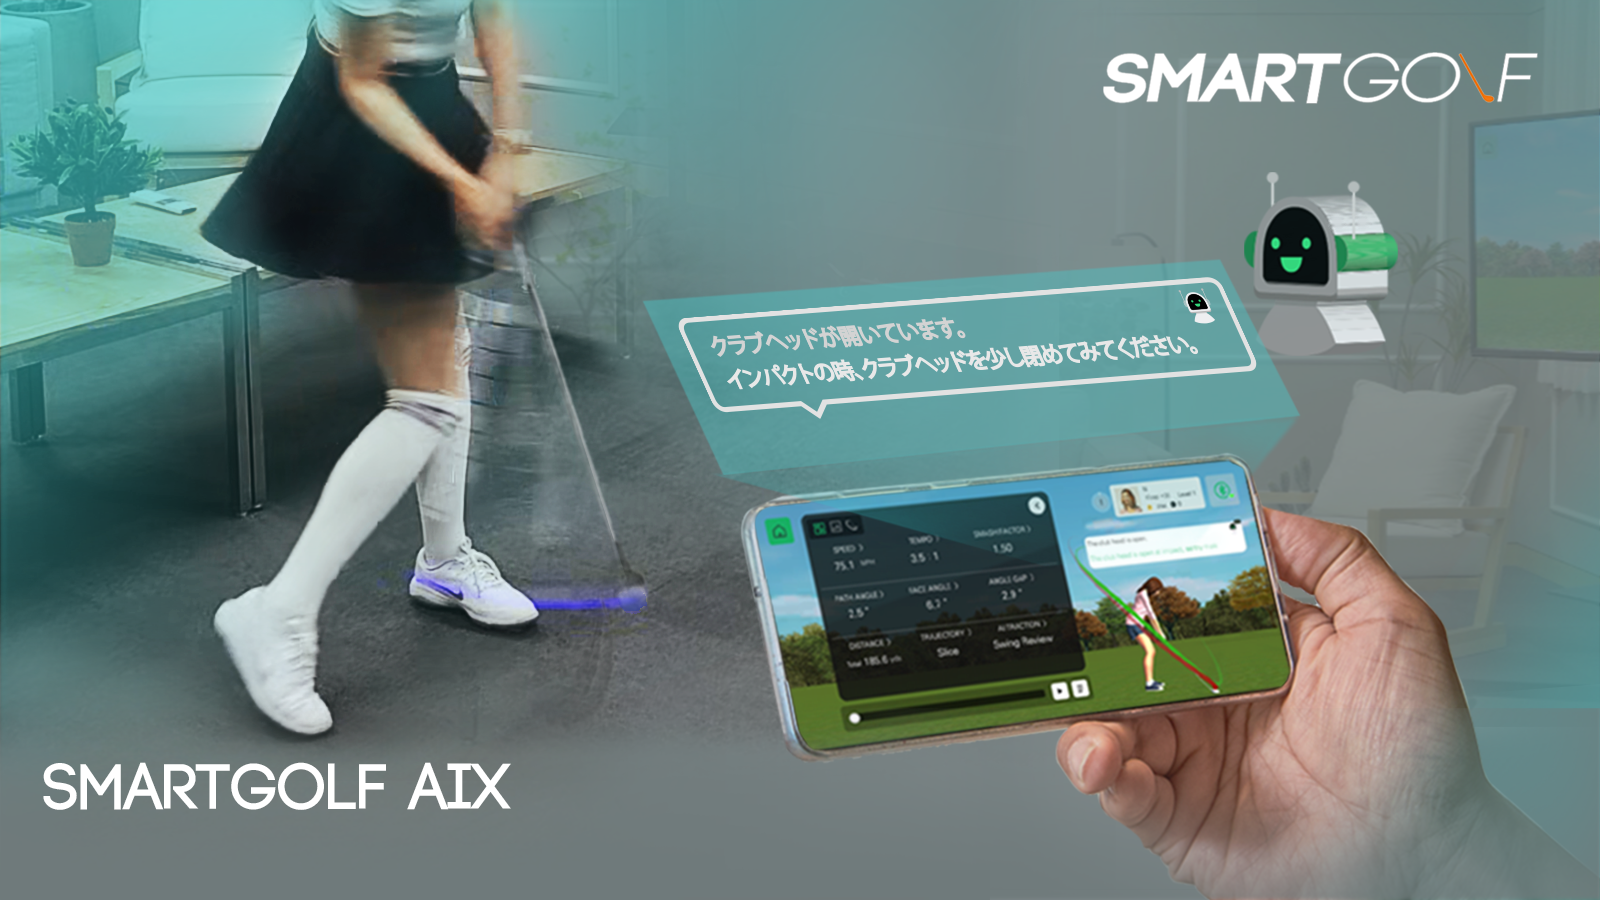 人工知能スイング練習器具「SMARTGOLF AIX」8月25日より先行予約販売を 